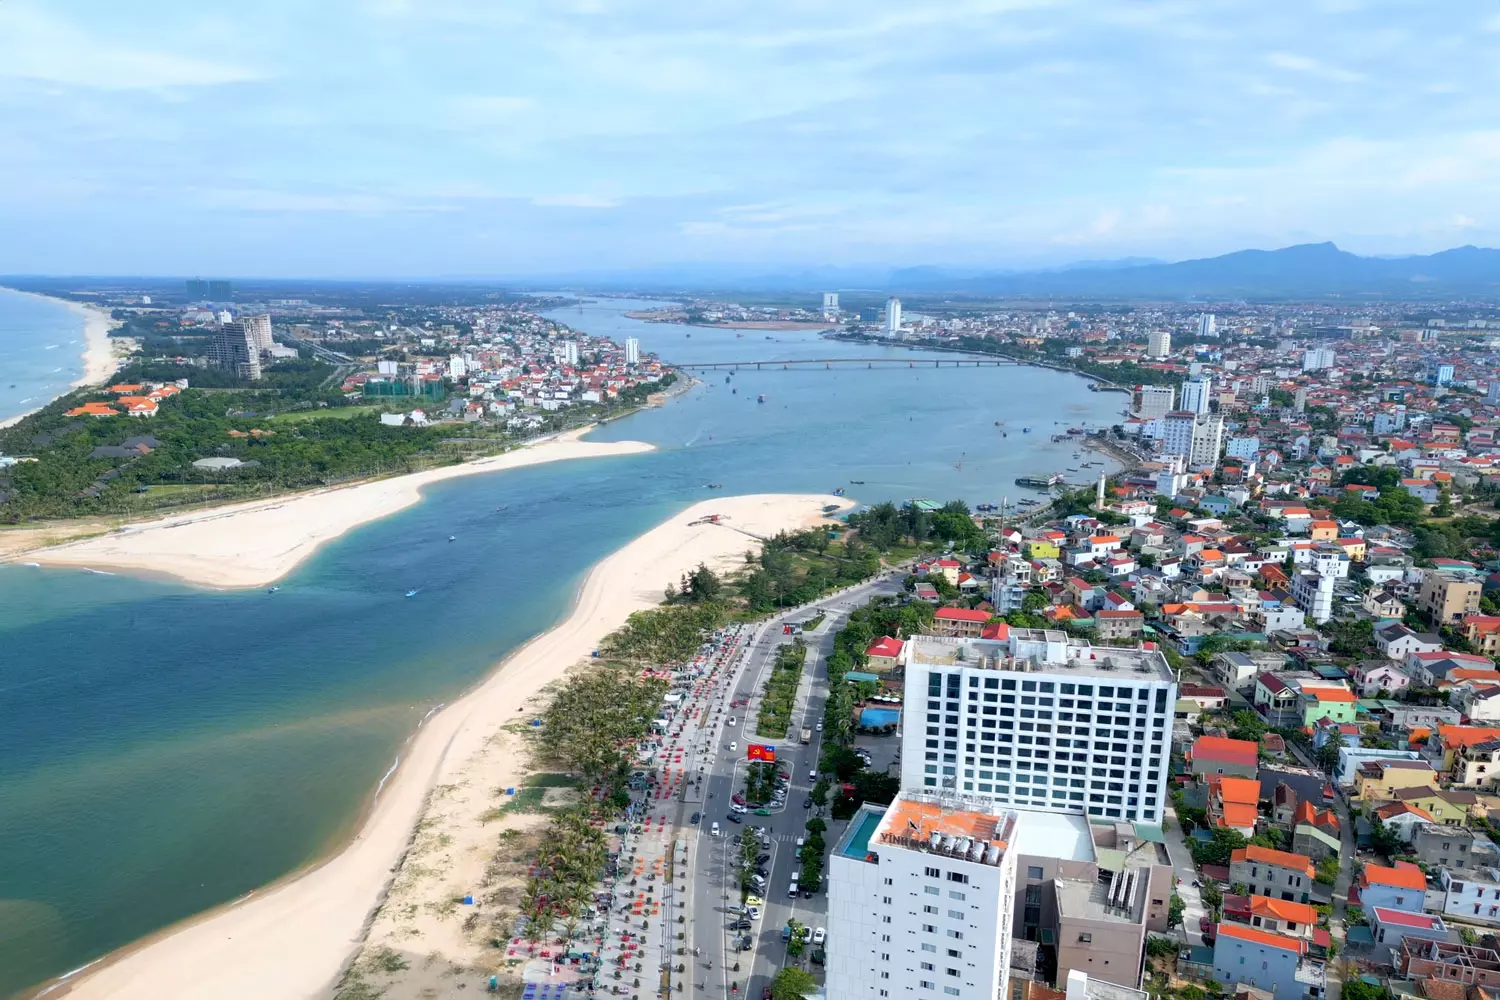 Bãi biển Nhật Lệ, được xem là một trong những bãi biển đẹp của Việt Nam